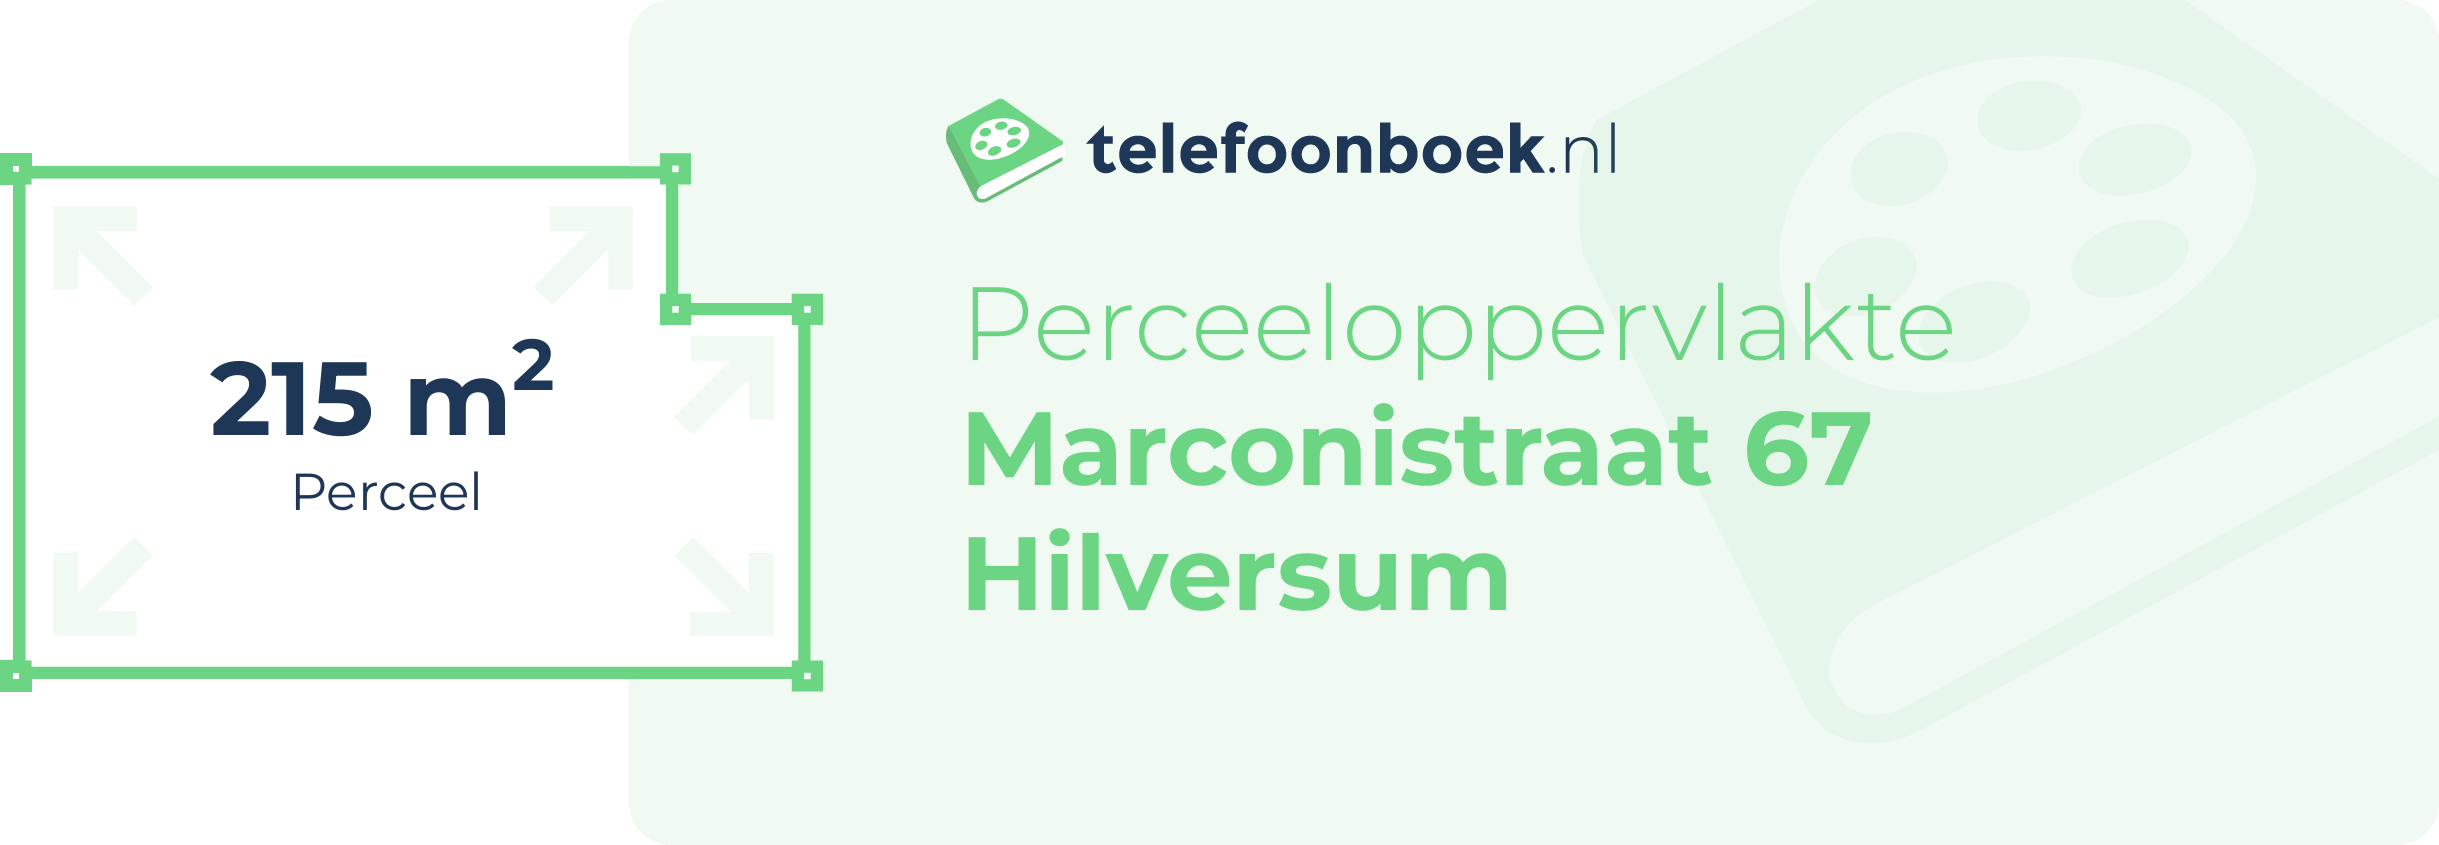 Perceeloppervlakte Marconistraat 67 Hilversum